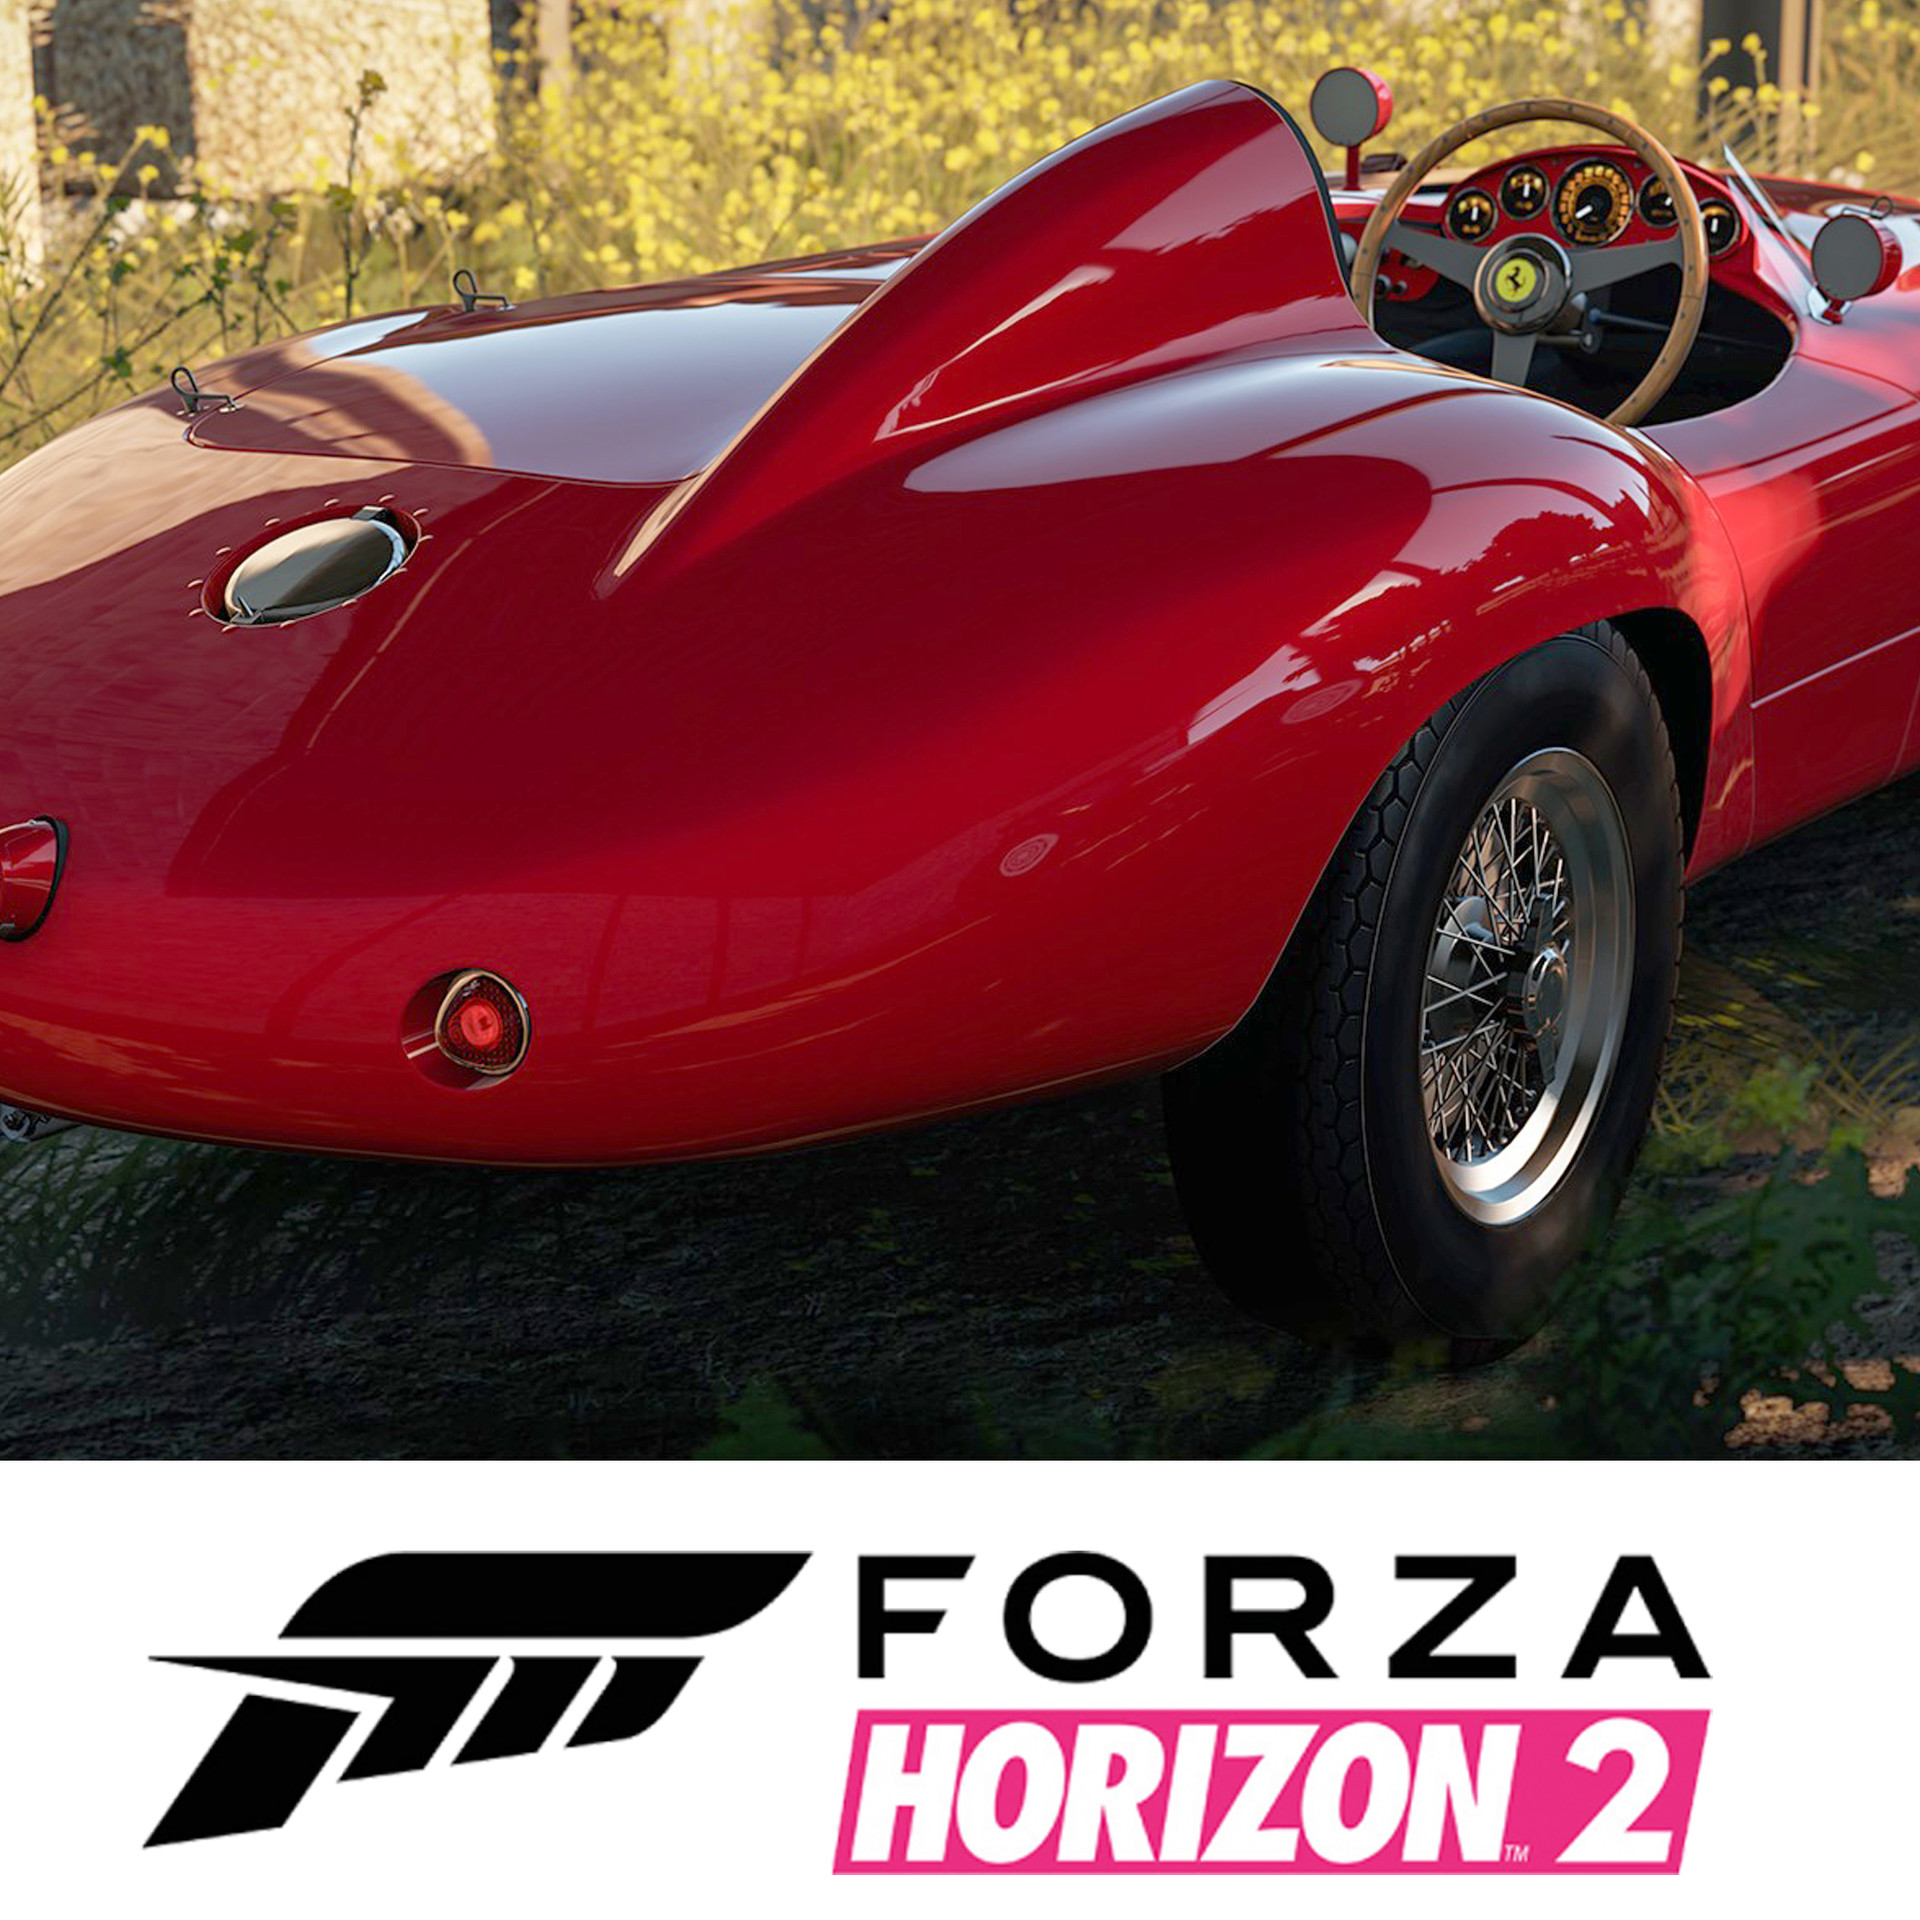 Horizon 2. Ferrari Forza Horizon 2. Forza Horizon 2 Скриншоты. Forza Horizon 4 Shelby Cobra Daytona Coupe 1965. DLC Forza Horizon 2.